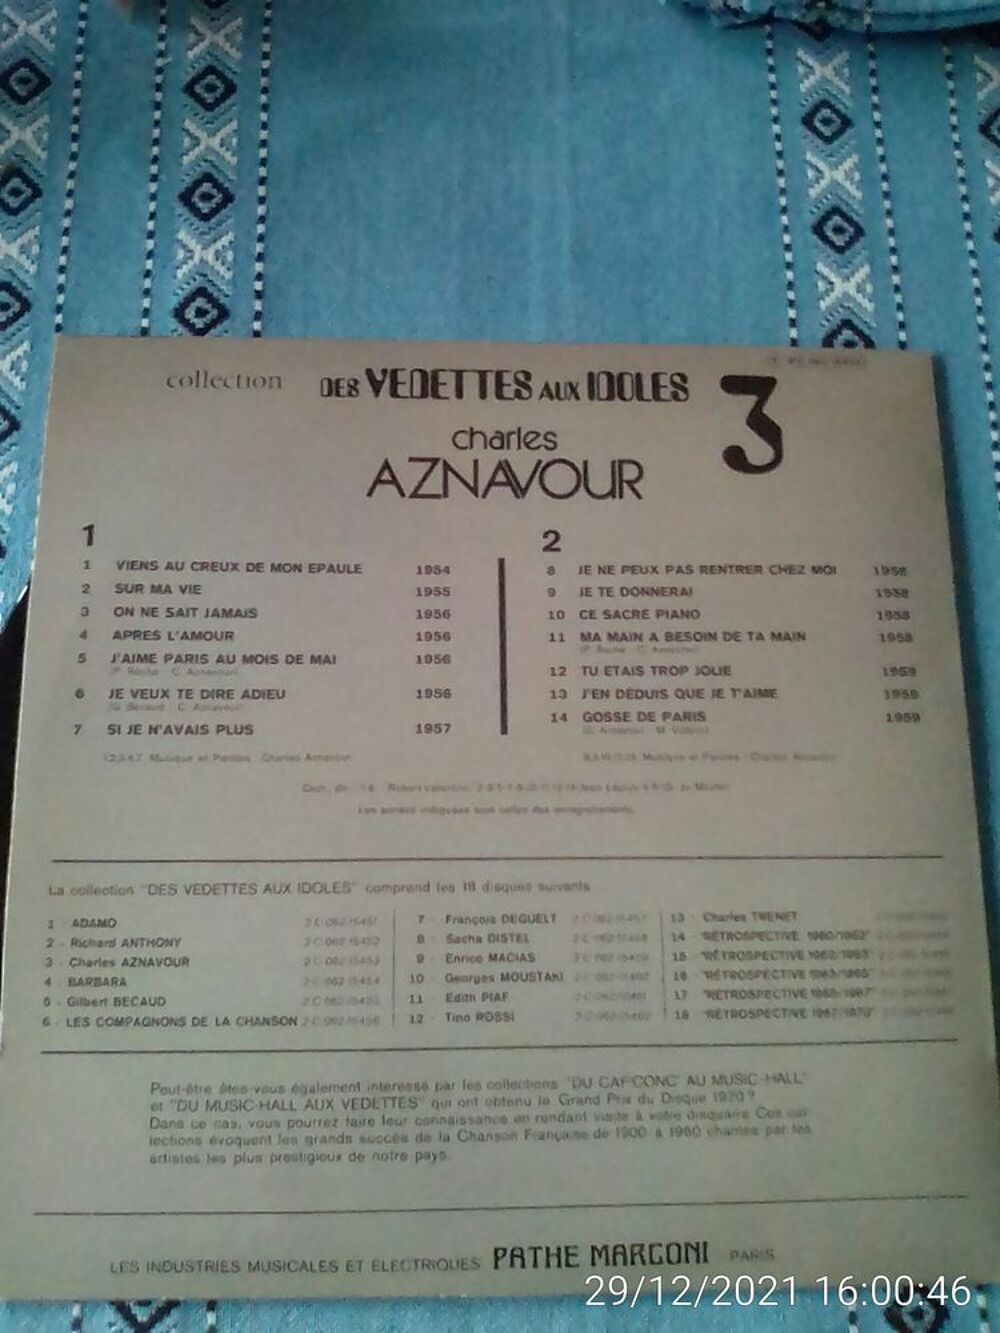 Vinyle 33T DES VEDETTES AUX IDOLES 3 - AZNAVOUR CD et vinyles